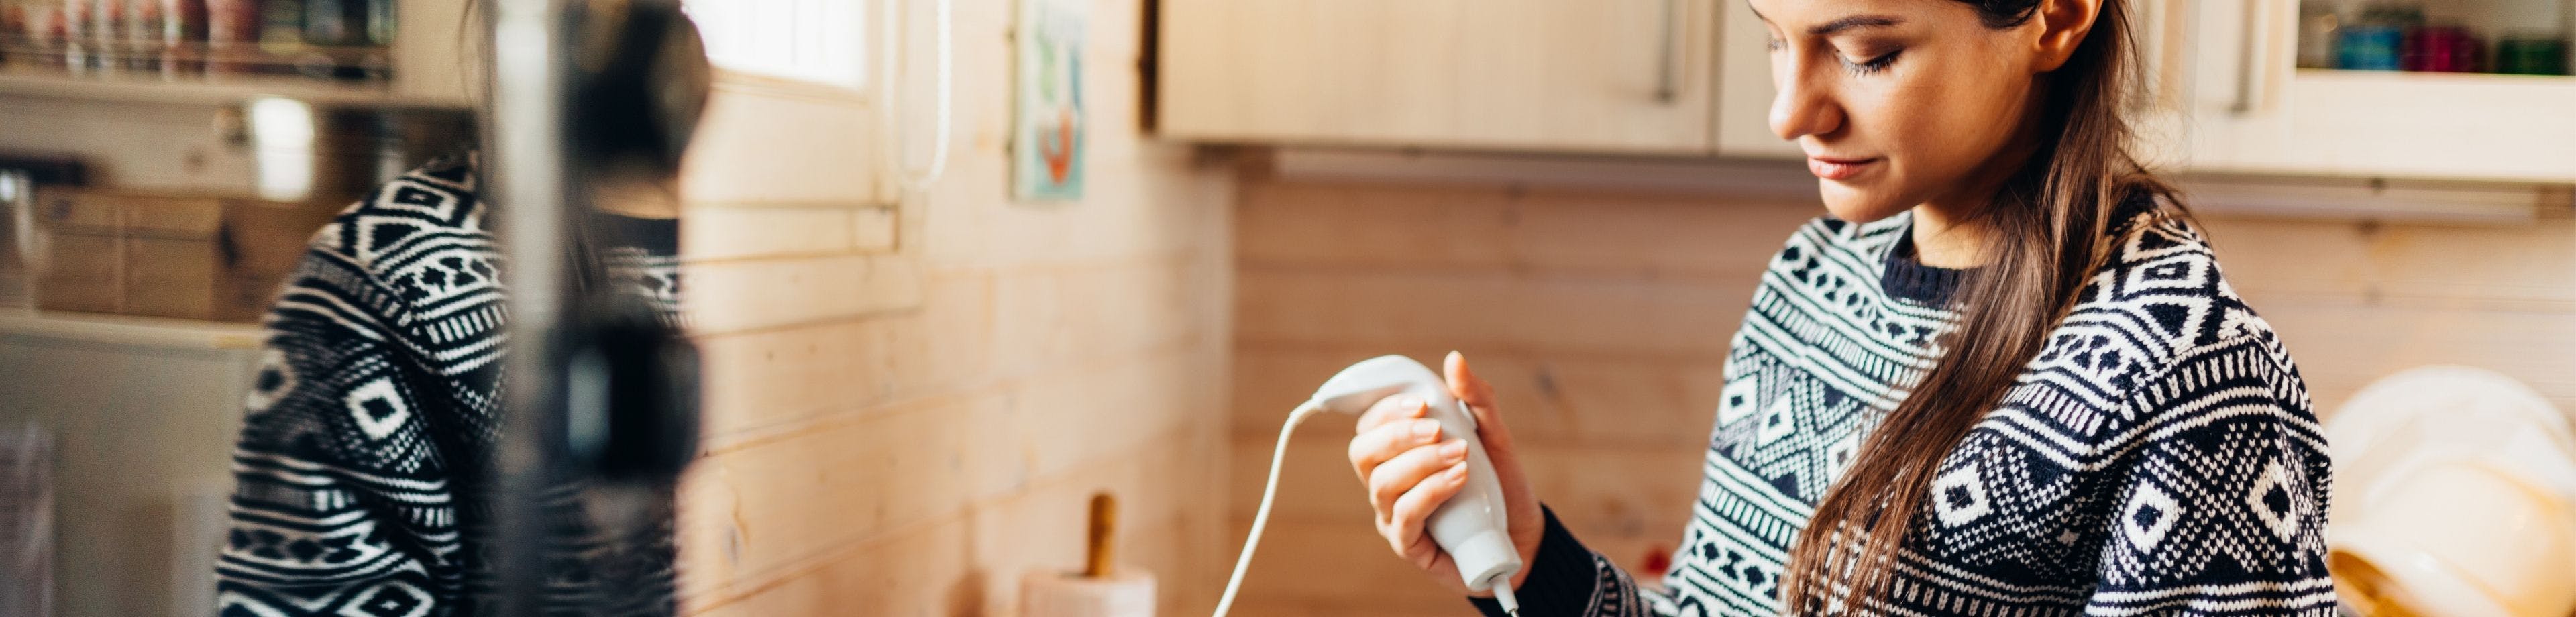 Vrouw in keuken met staafmixer. Lees hoe je de kans op kortsluiting en elektriciteitsschade in huis verkleint.